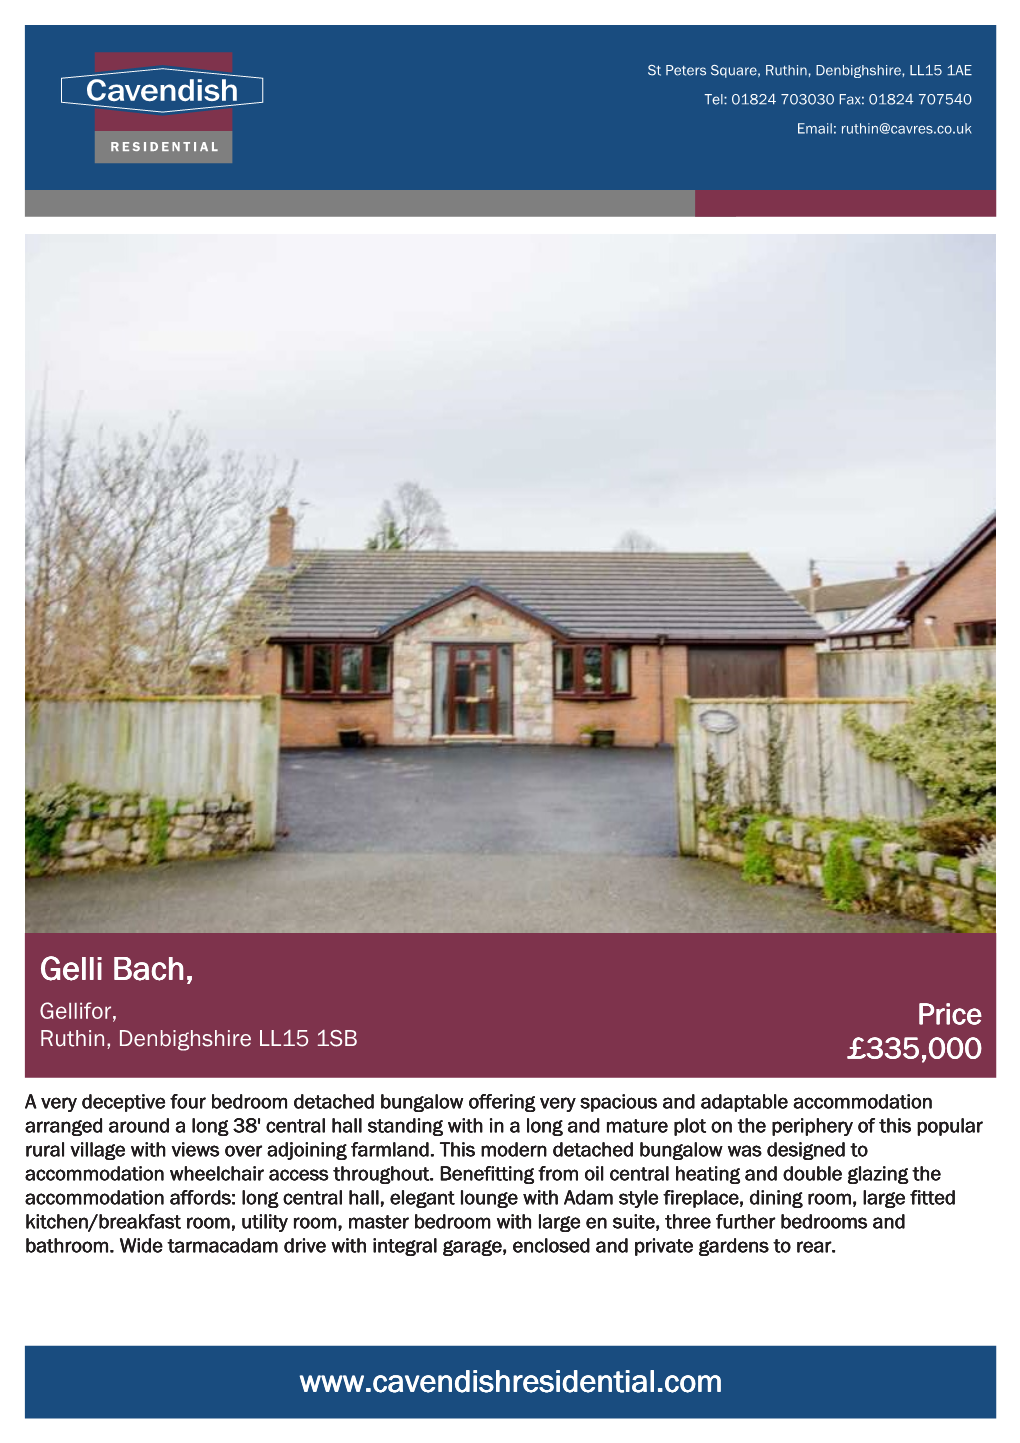 Gelli Bach, Gellifor, Price Ruthin, Denbighshire LL15 1SB £335,000